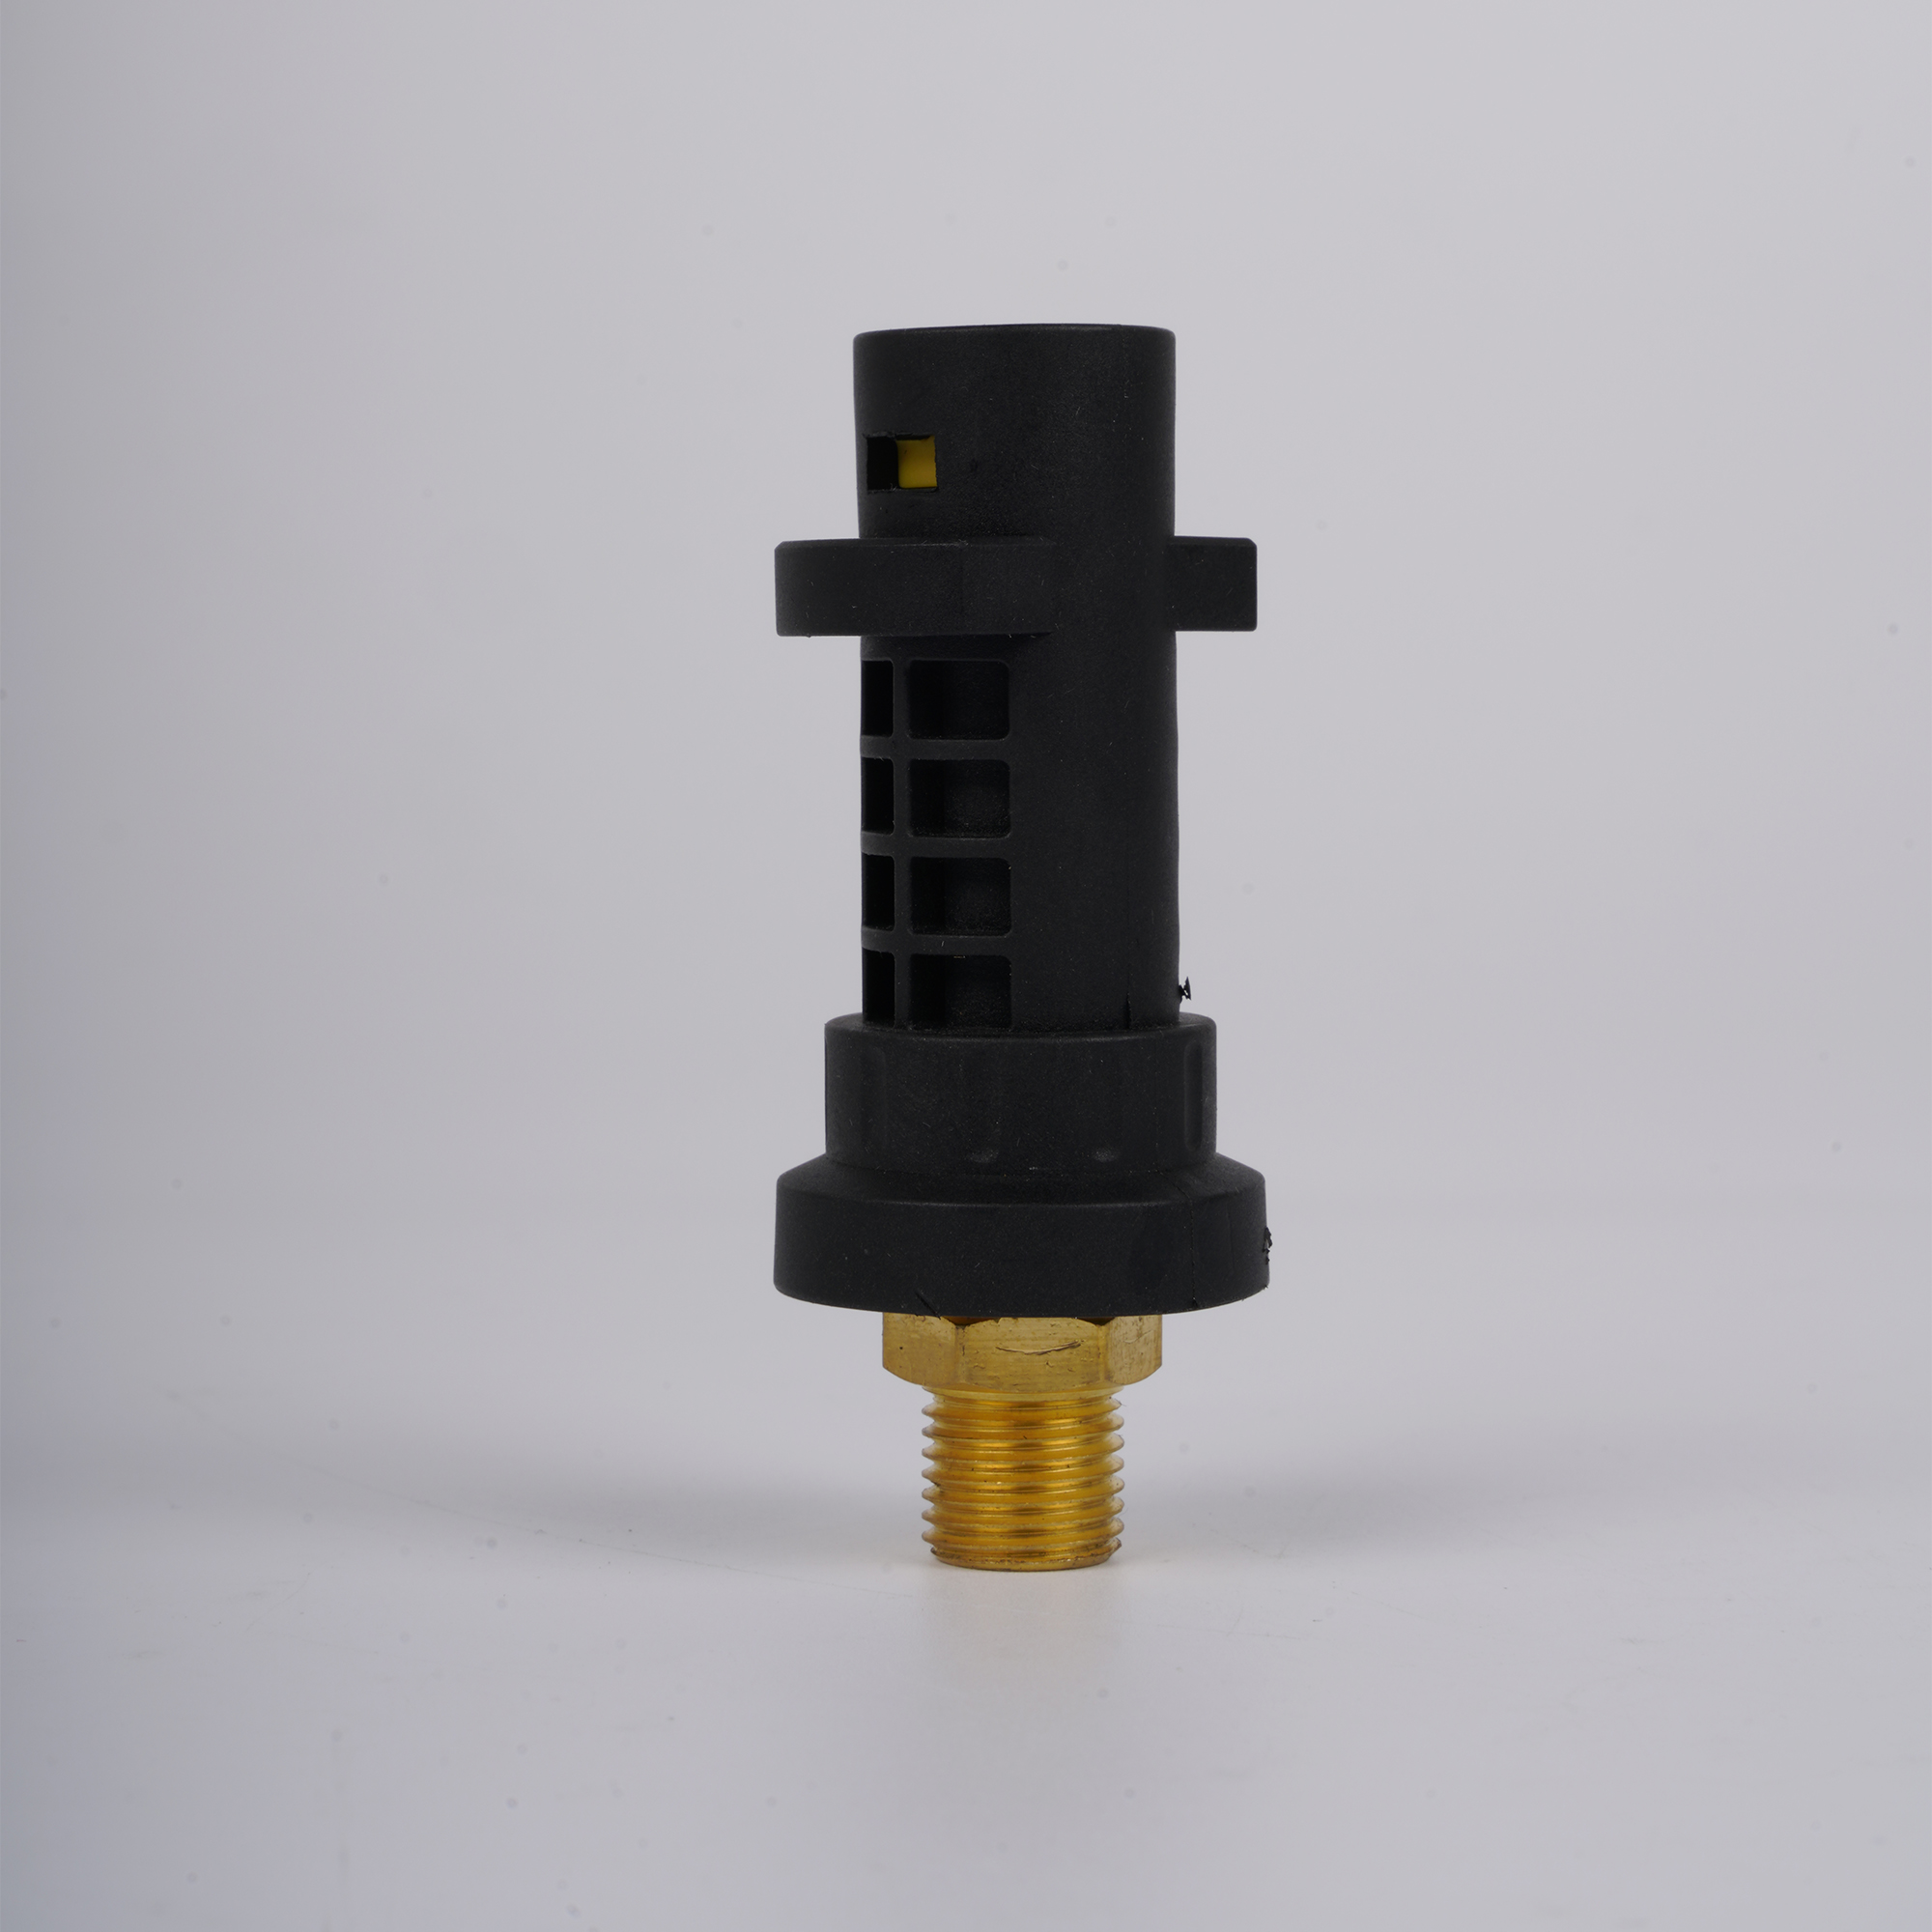 Konektor Pemasangan Adaptor Cannon Busa Untuk Seri Adaptor Washer Mobil Bertekanan Tinggi